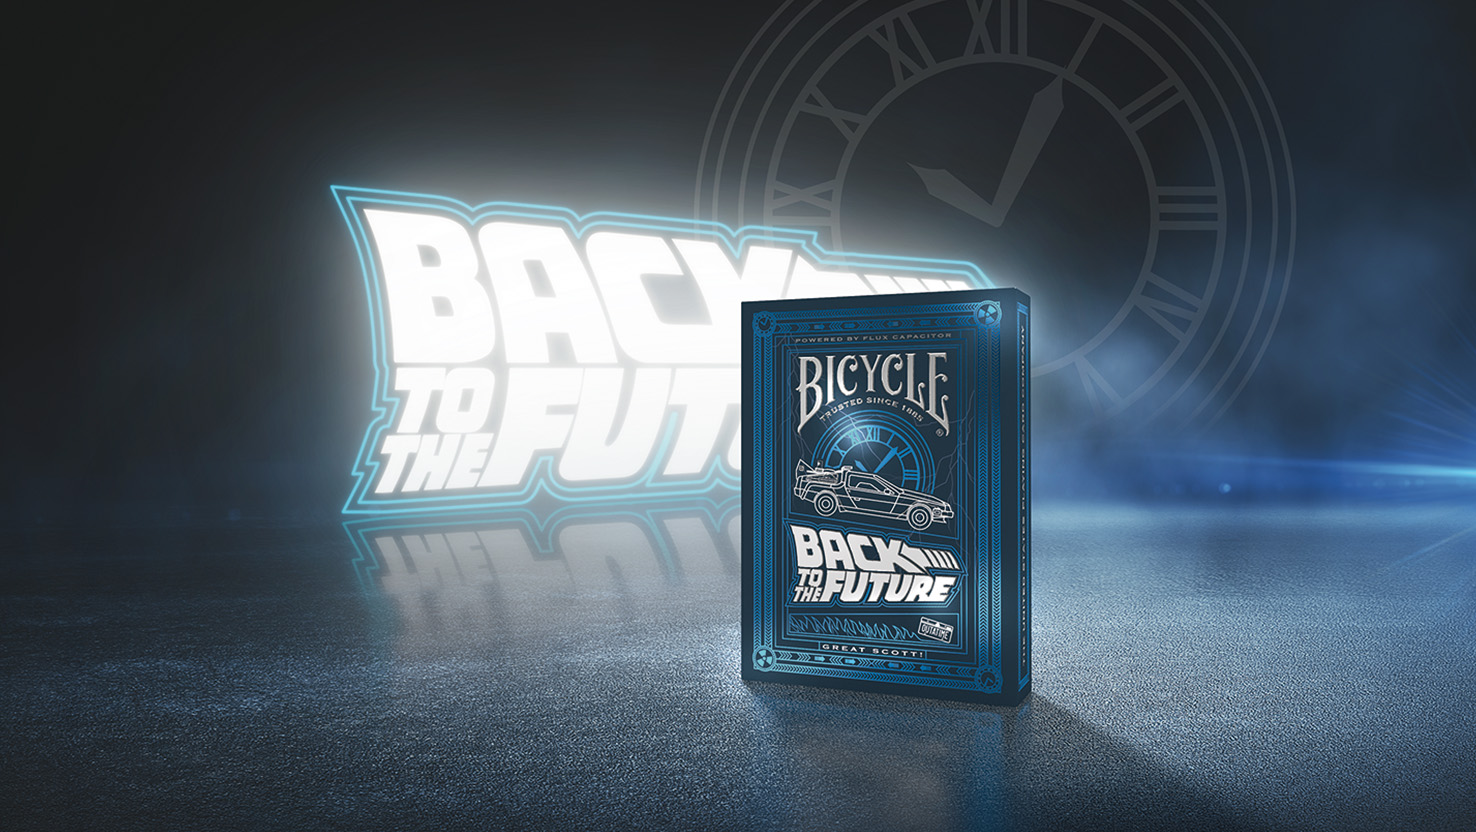 Das neue Back to the Future Kartenspiel von Bicycle.